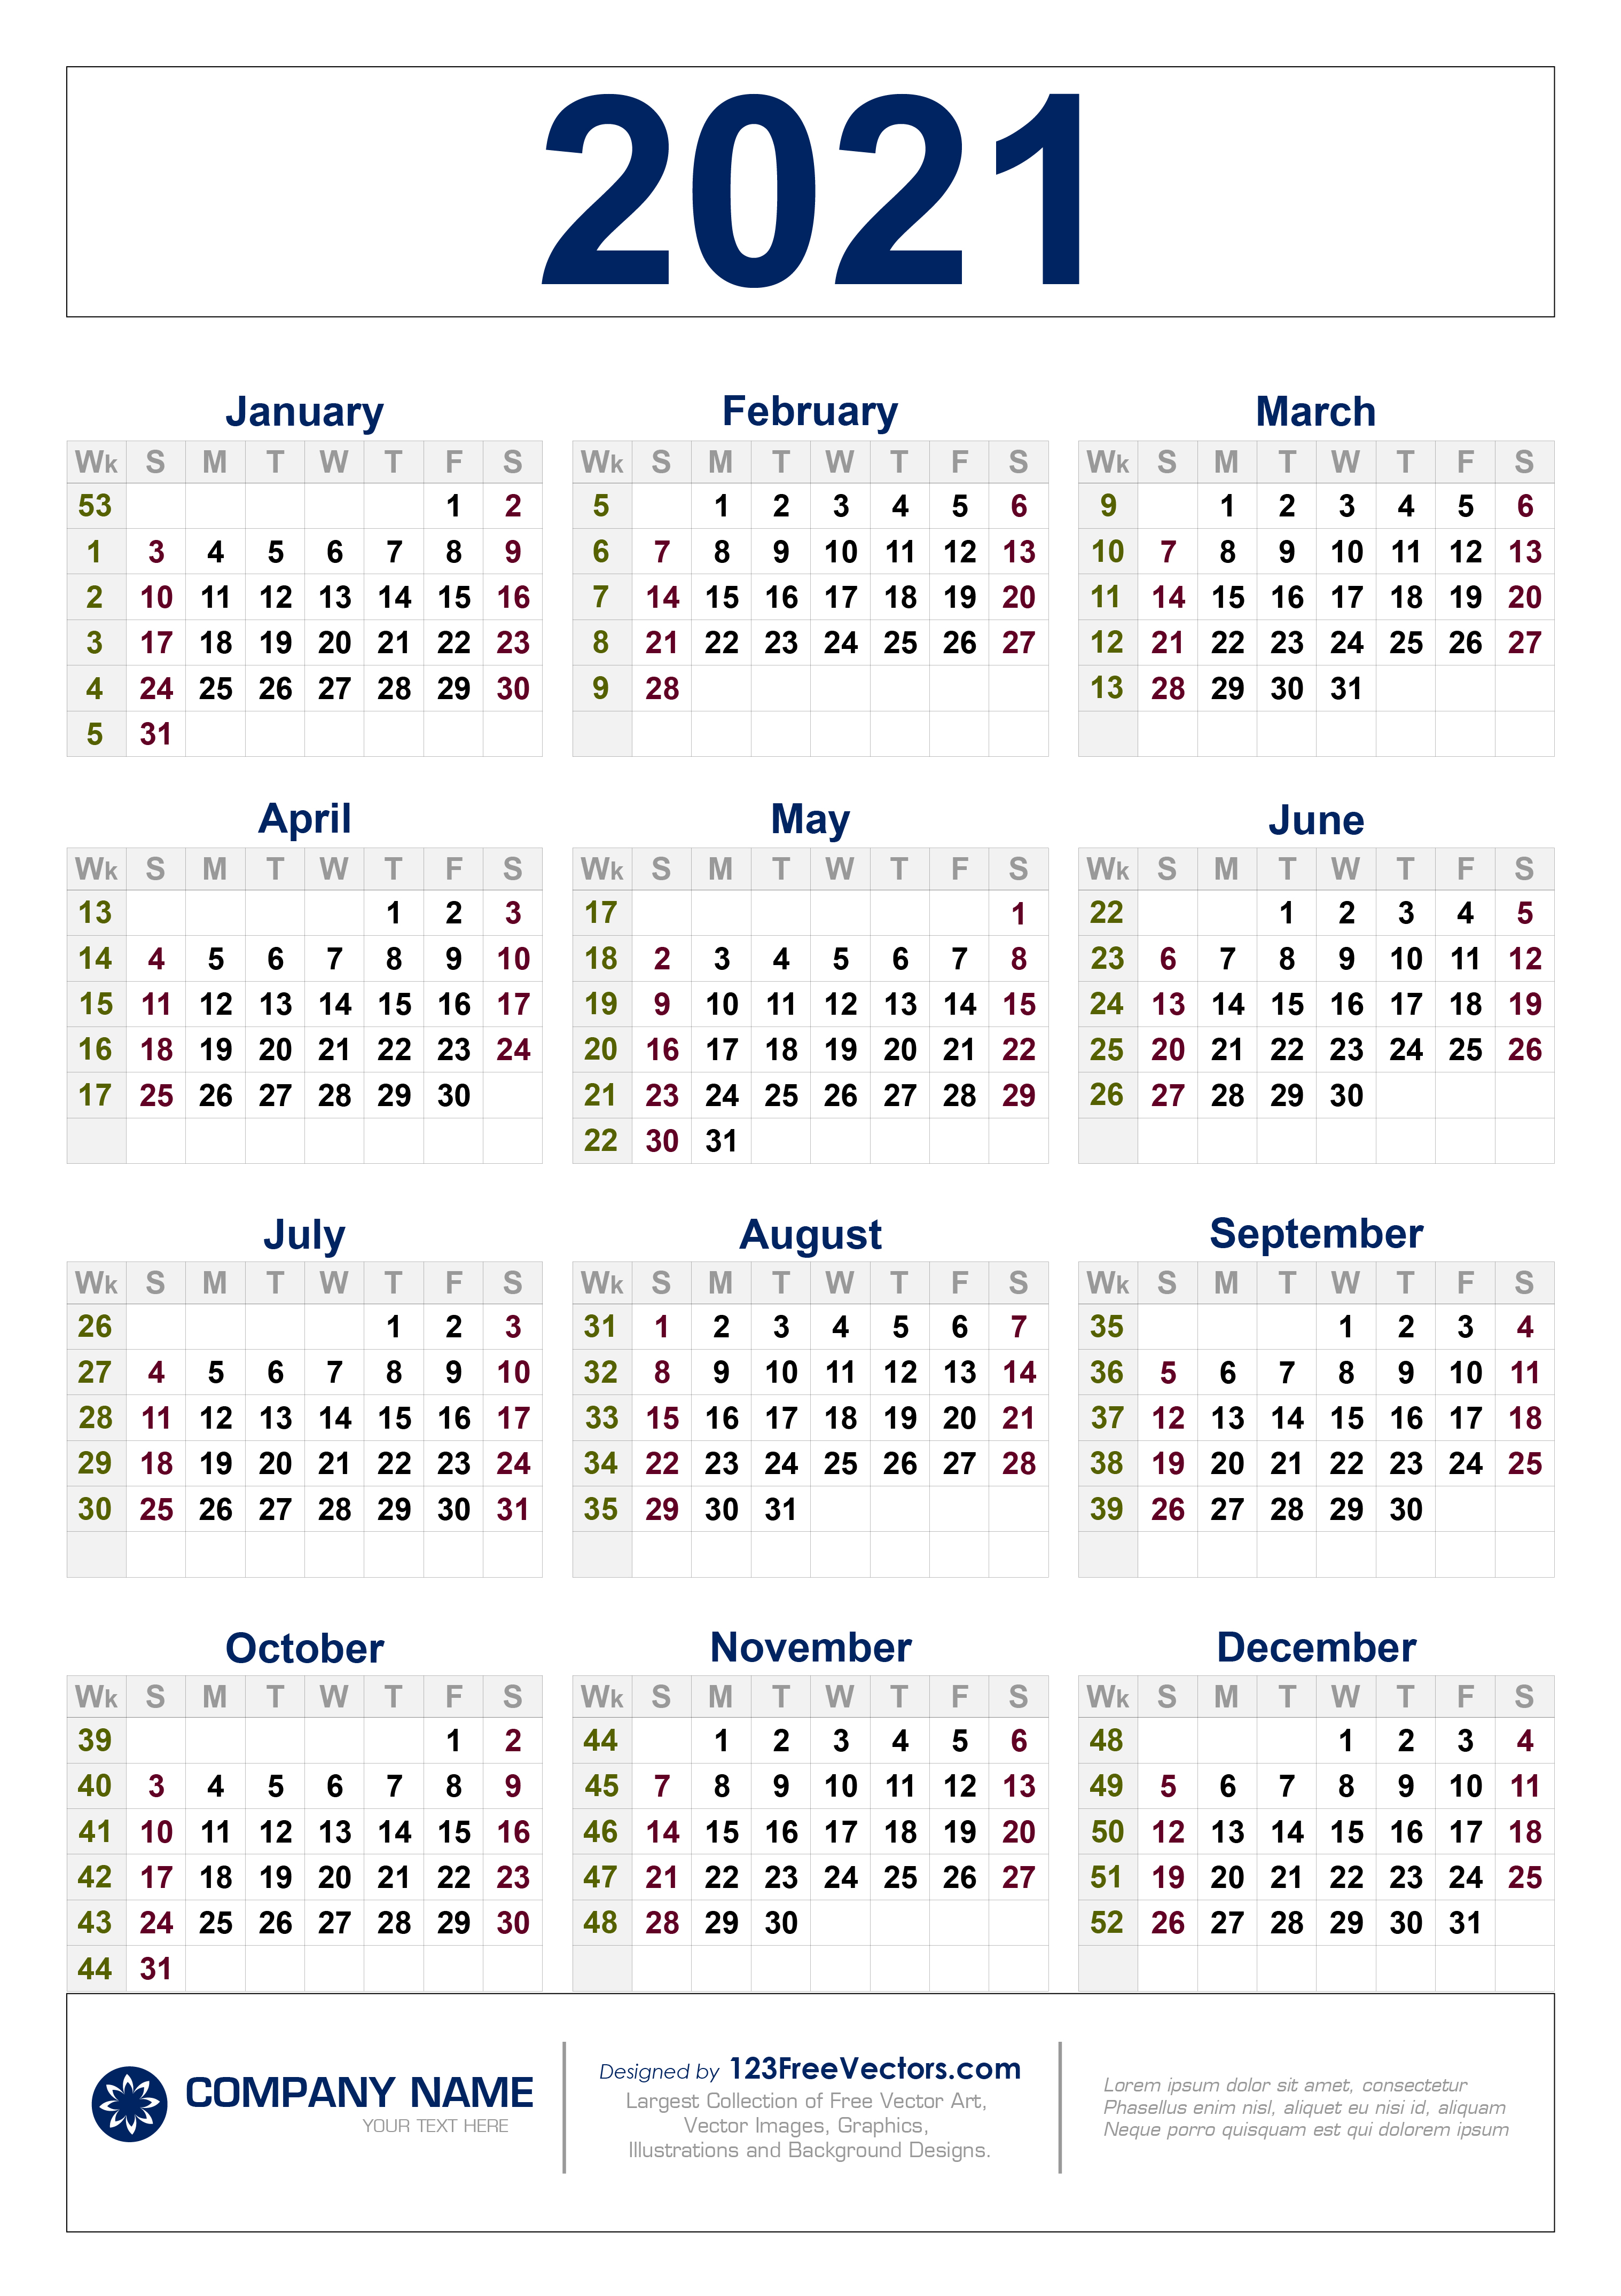 Weekly Calendar 2021 Free Free Download 2021 Calendar with Week Numbers